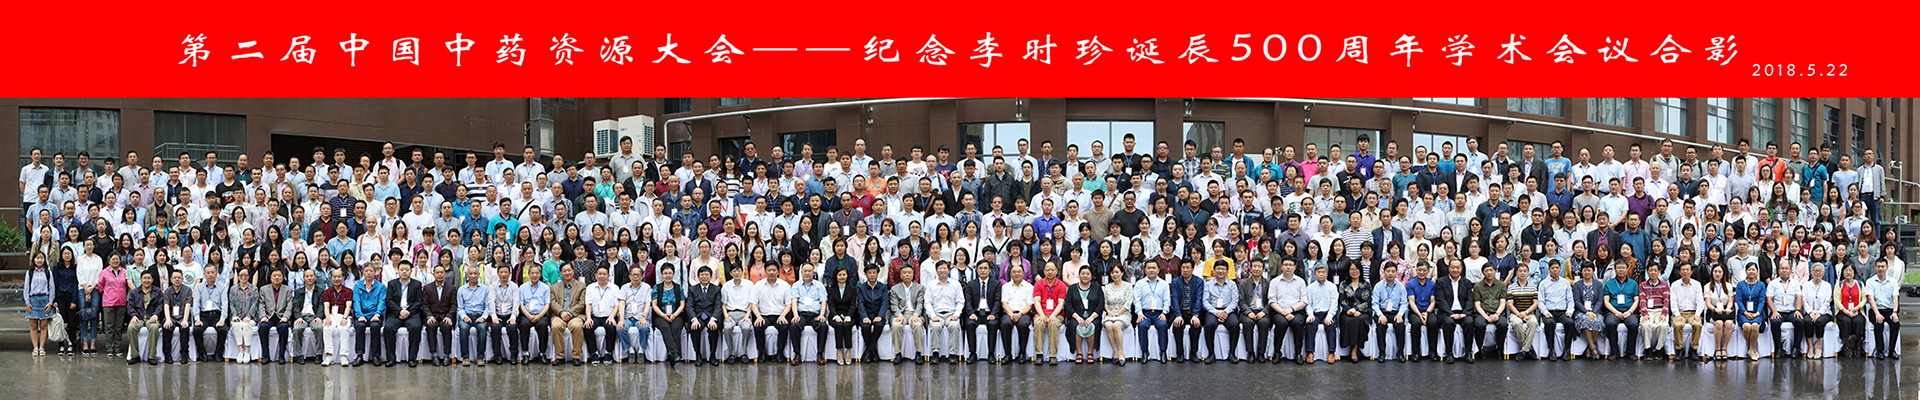 第二届中国中药资源大会--纪念李时珍诞辰500周年学术会议摄影